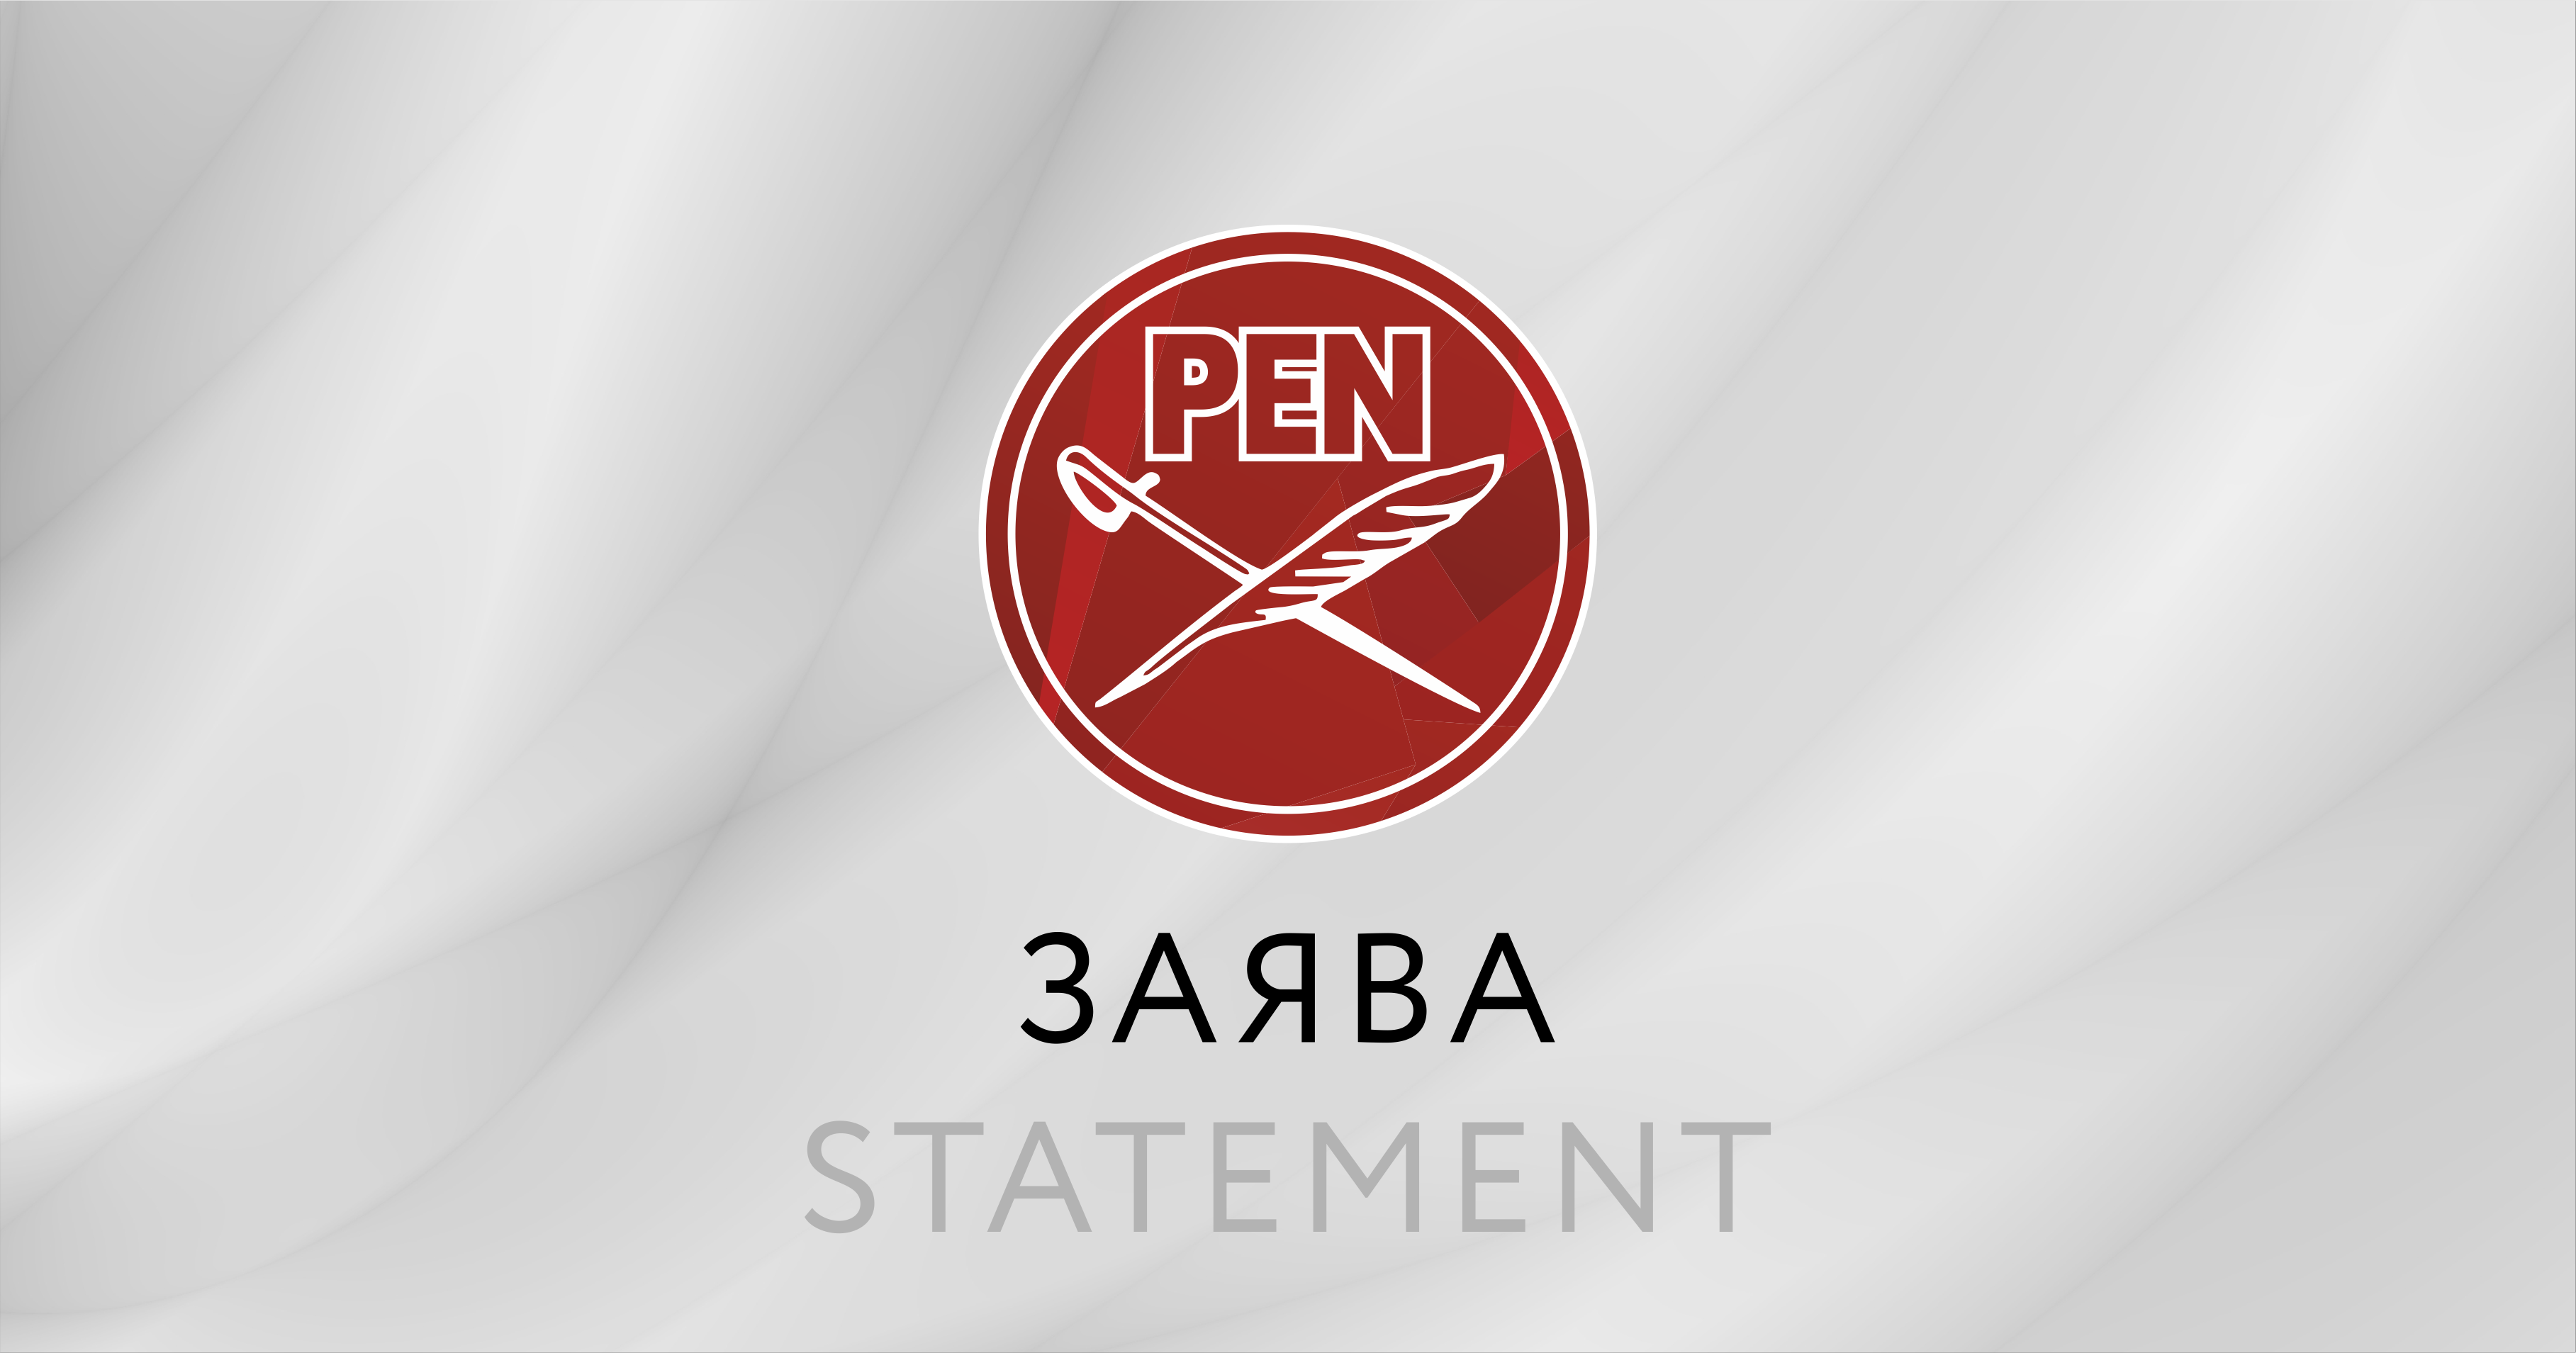 Совместное заявление правозащитных организаций о недопустимости давления и задержаний на белорусских правозащитников при выполнении ими своих профессиональных обязанностей